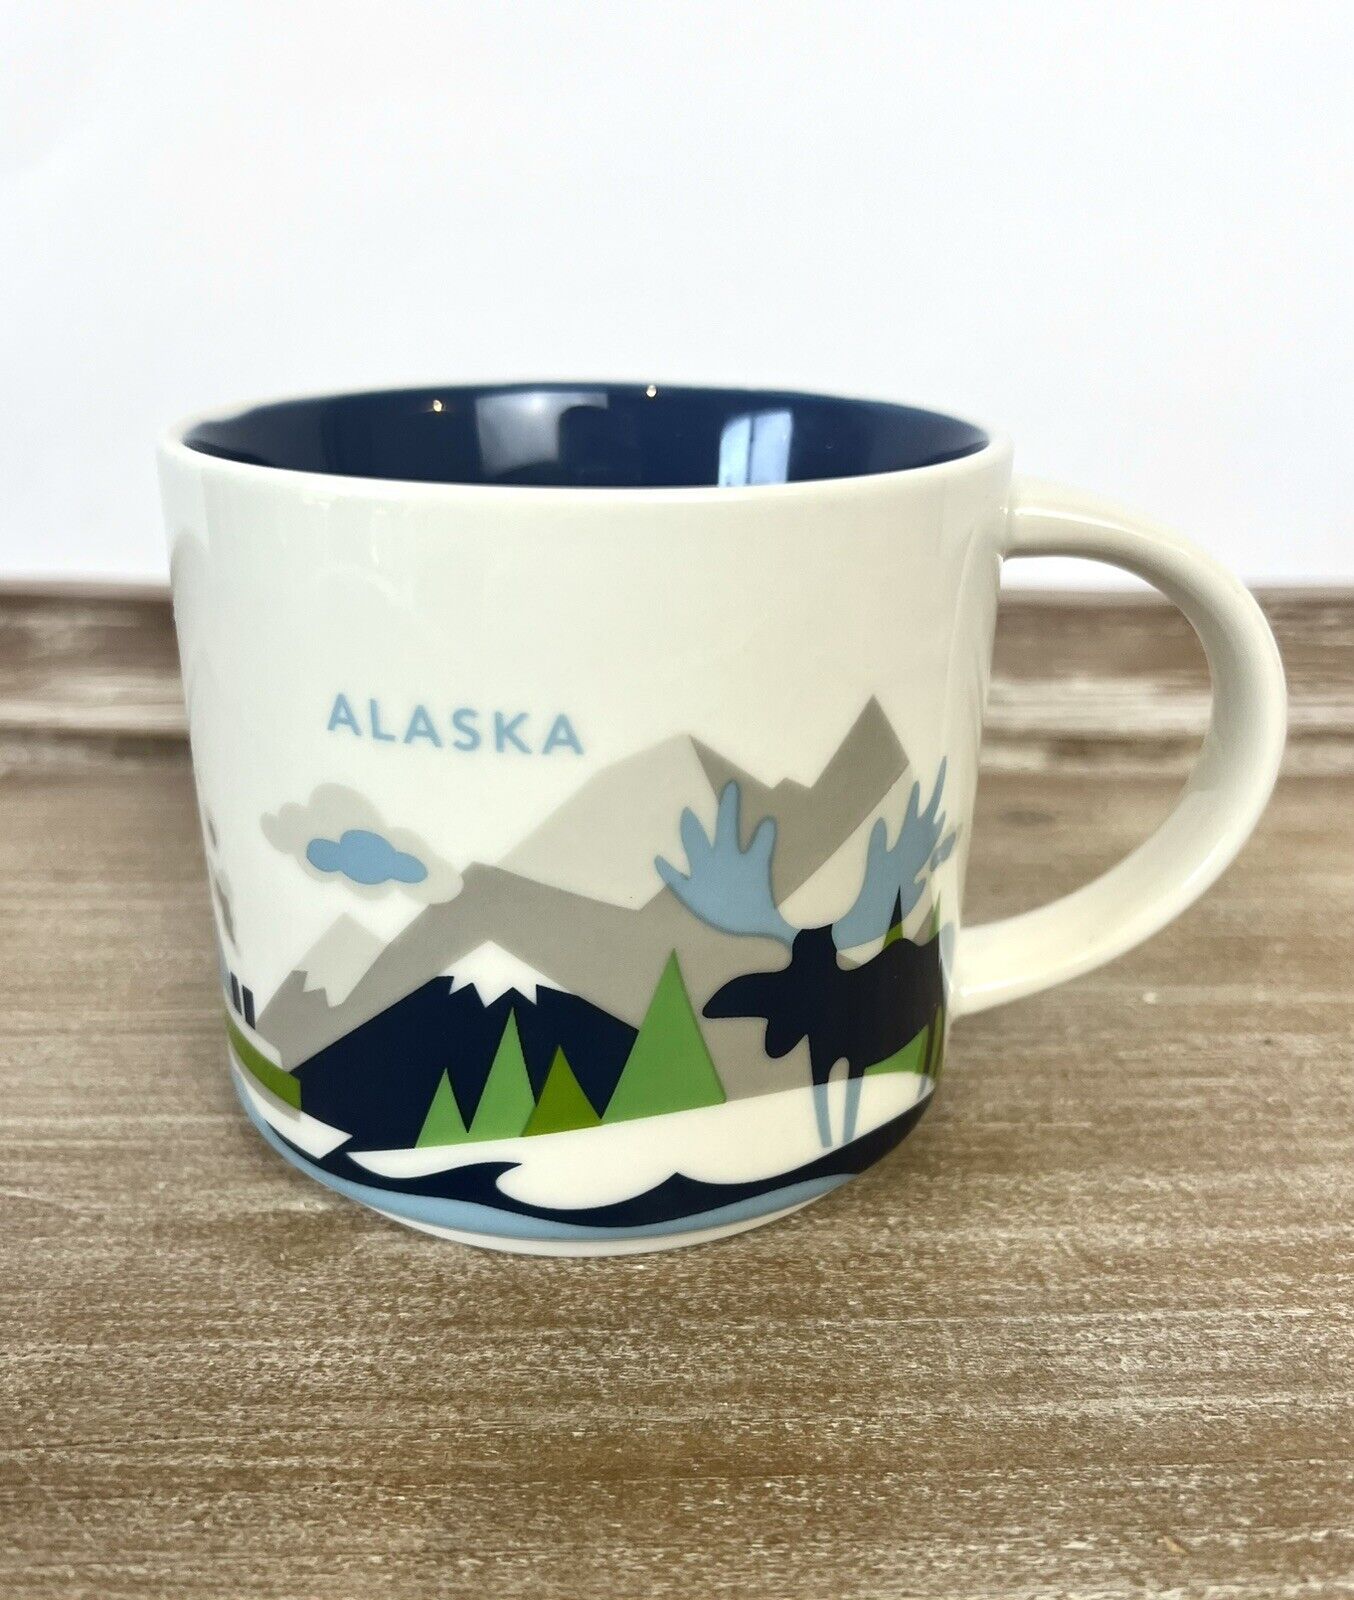 Starbucks You Are Here “ALASKA” Coffee Mug